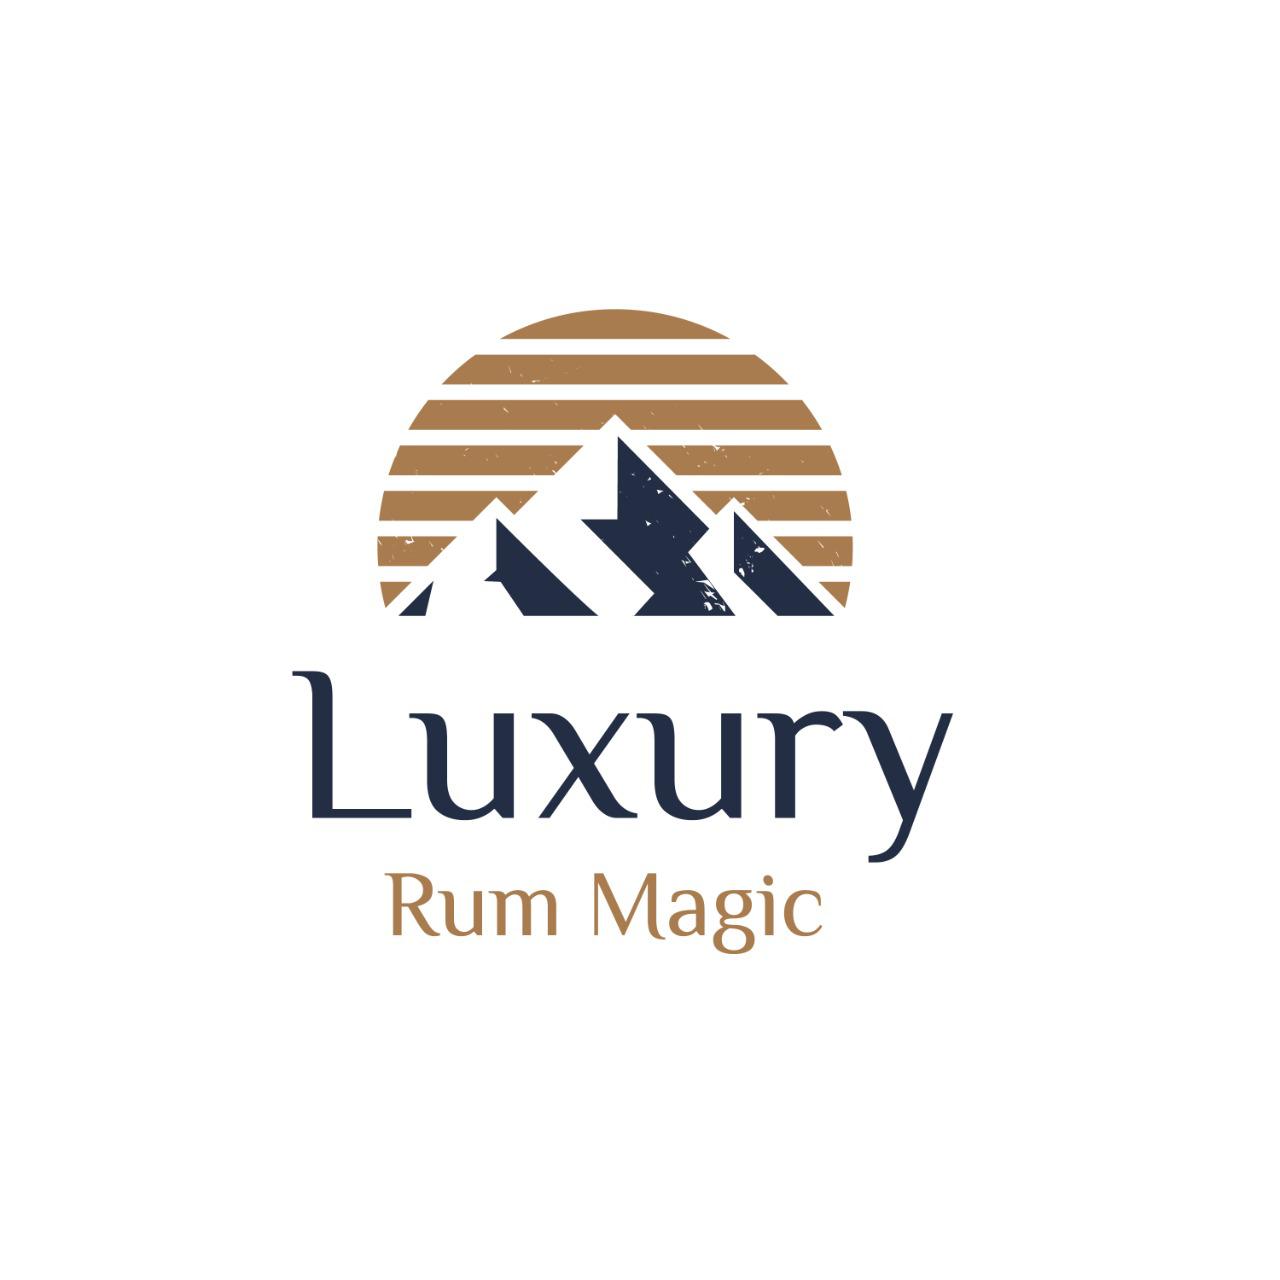 Luxury Rum Magic